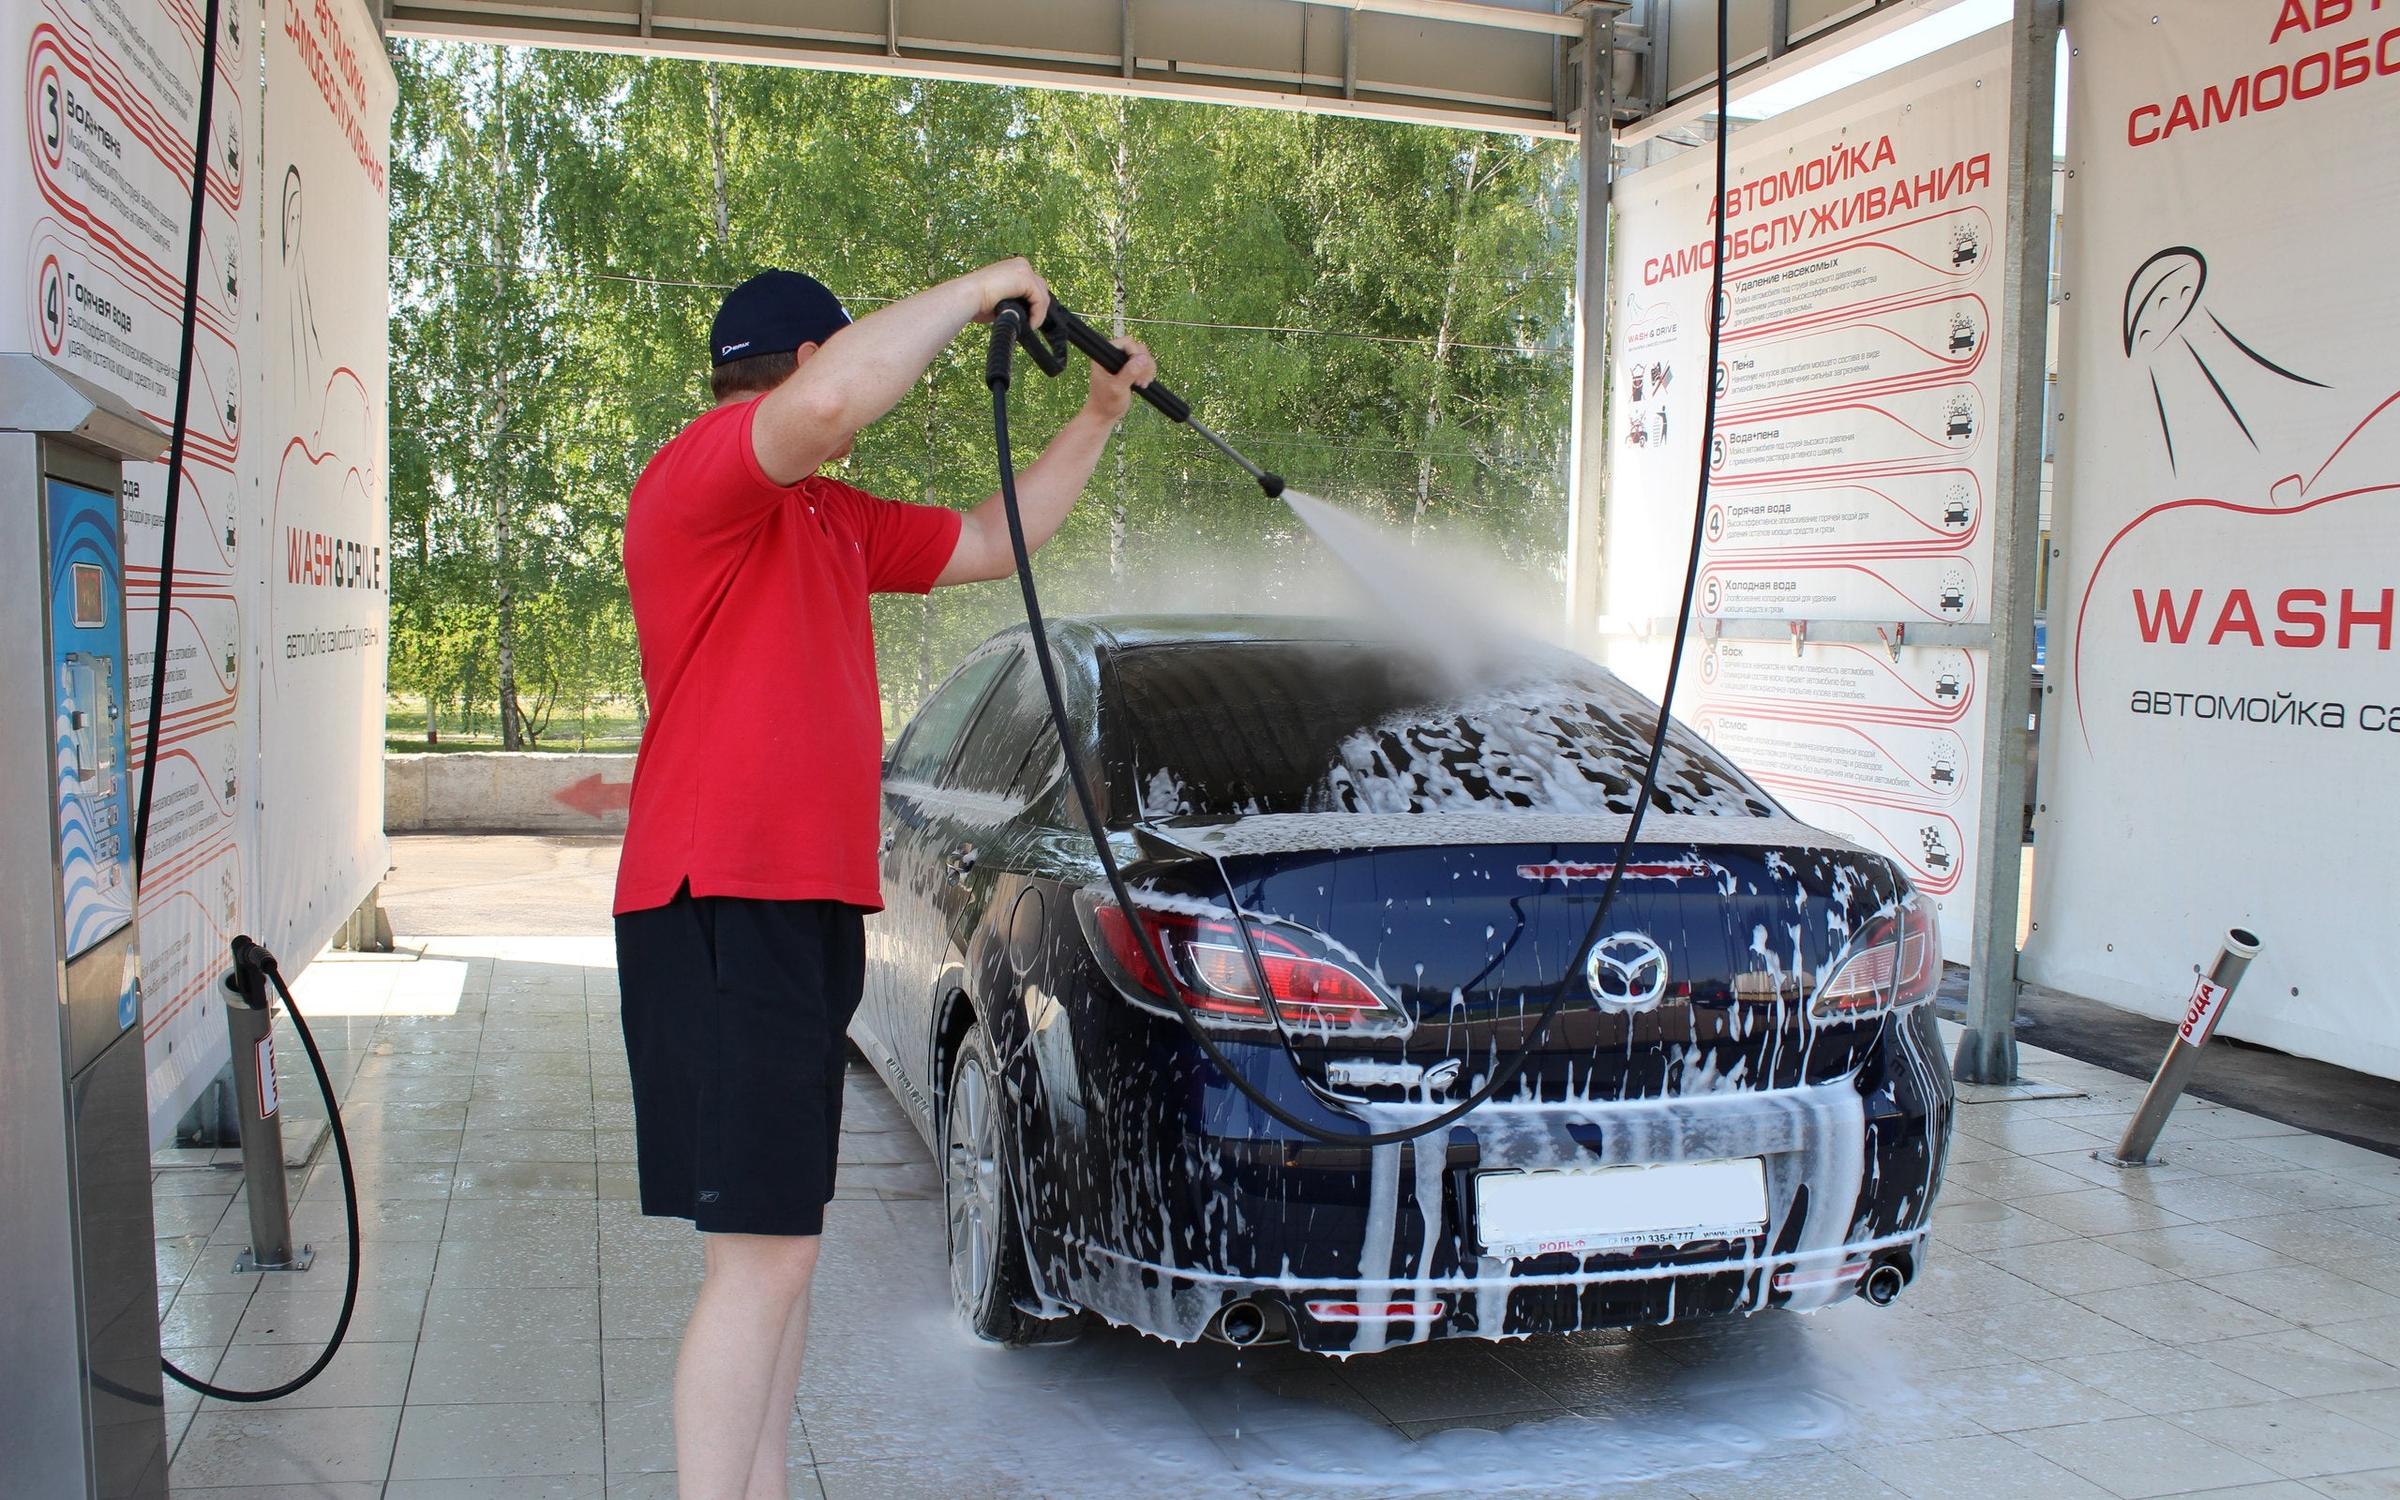 Где можно помыть автомобиль. Автомойка самообслуживания car Wash. Самостоятельная мойка автомобиля. Ручная мойка машины. Мытье машины на автомойке.